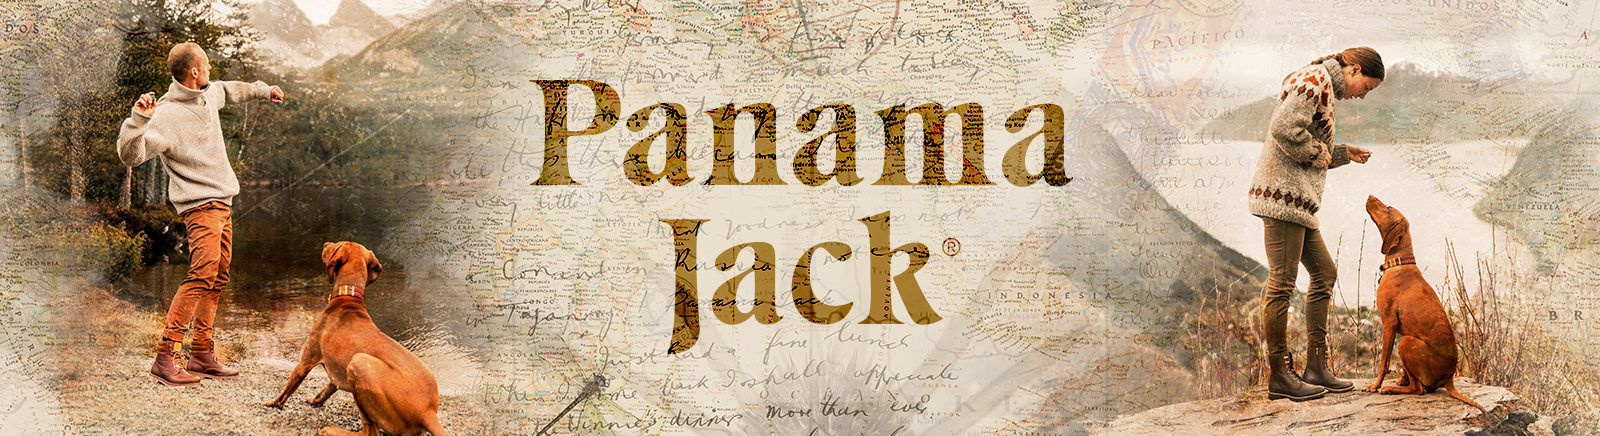 Juppen: Panama Jack Pantoletten für Herren online shoppen